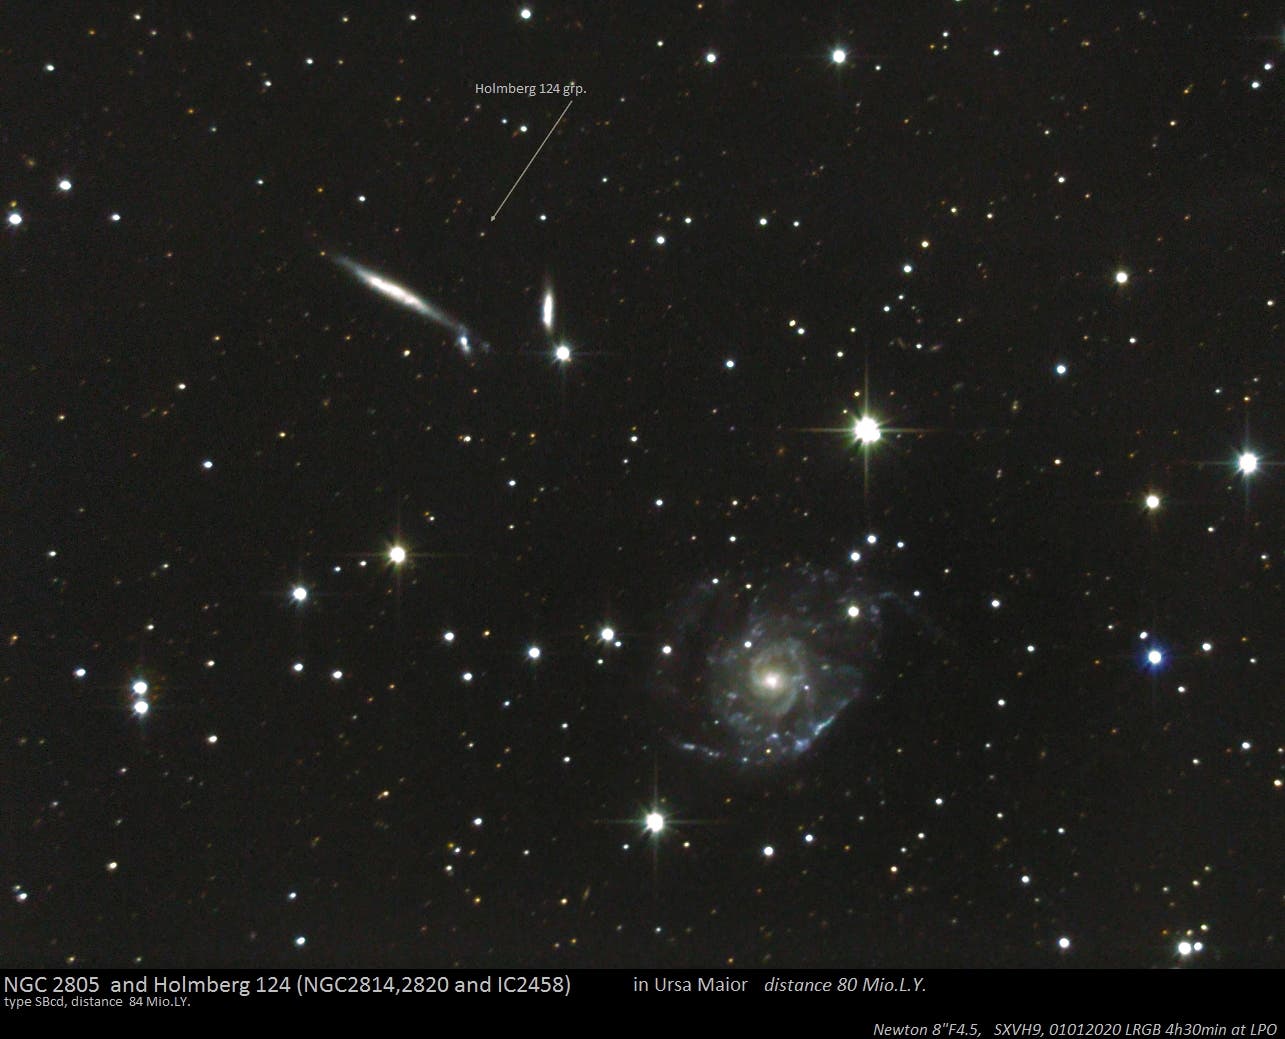 Holmberg 124 und NGC 2805 in Ursa Maior